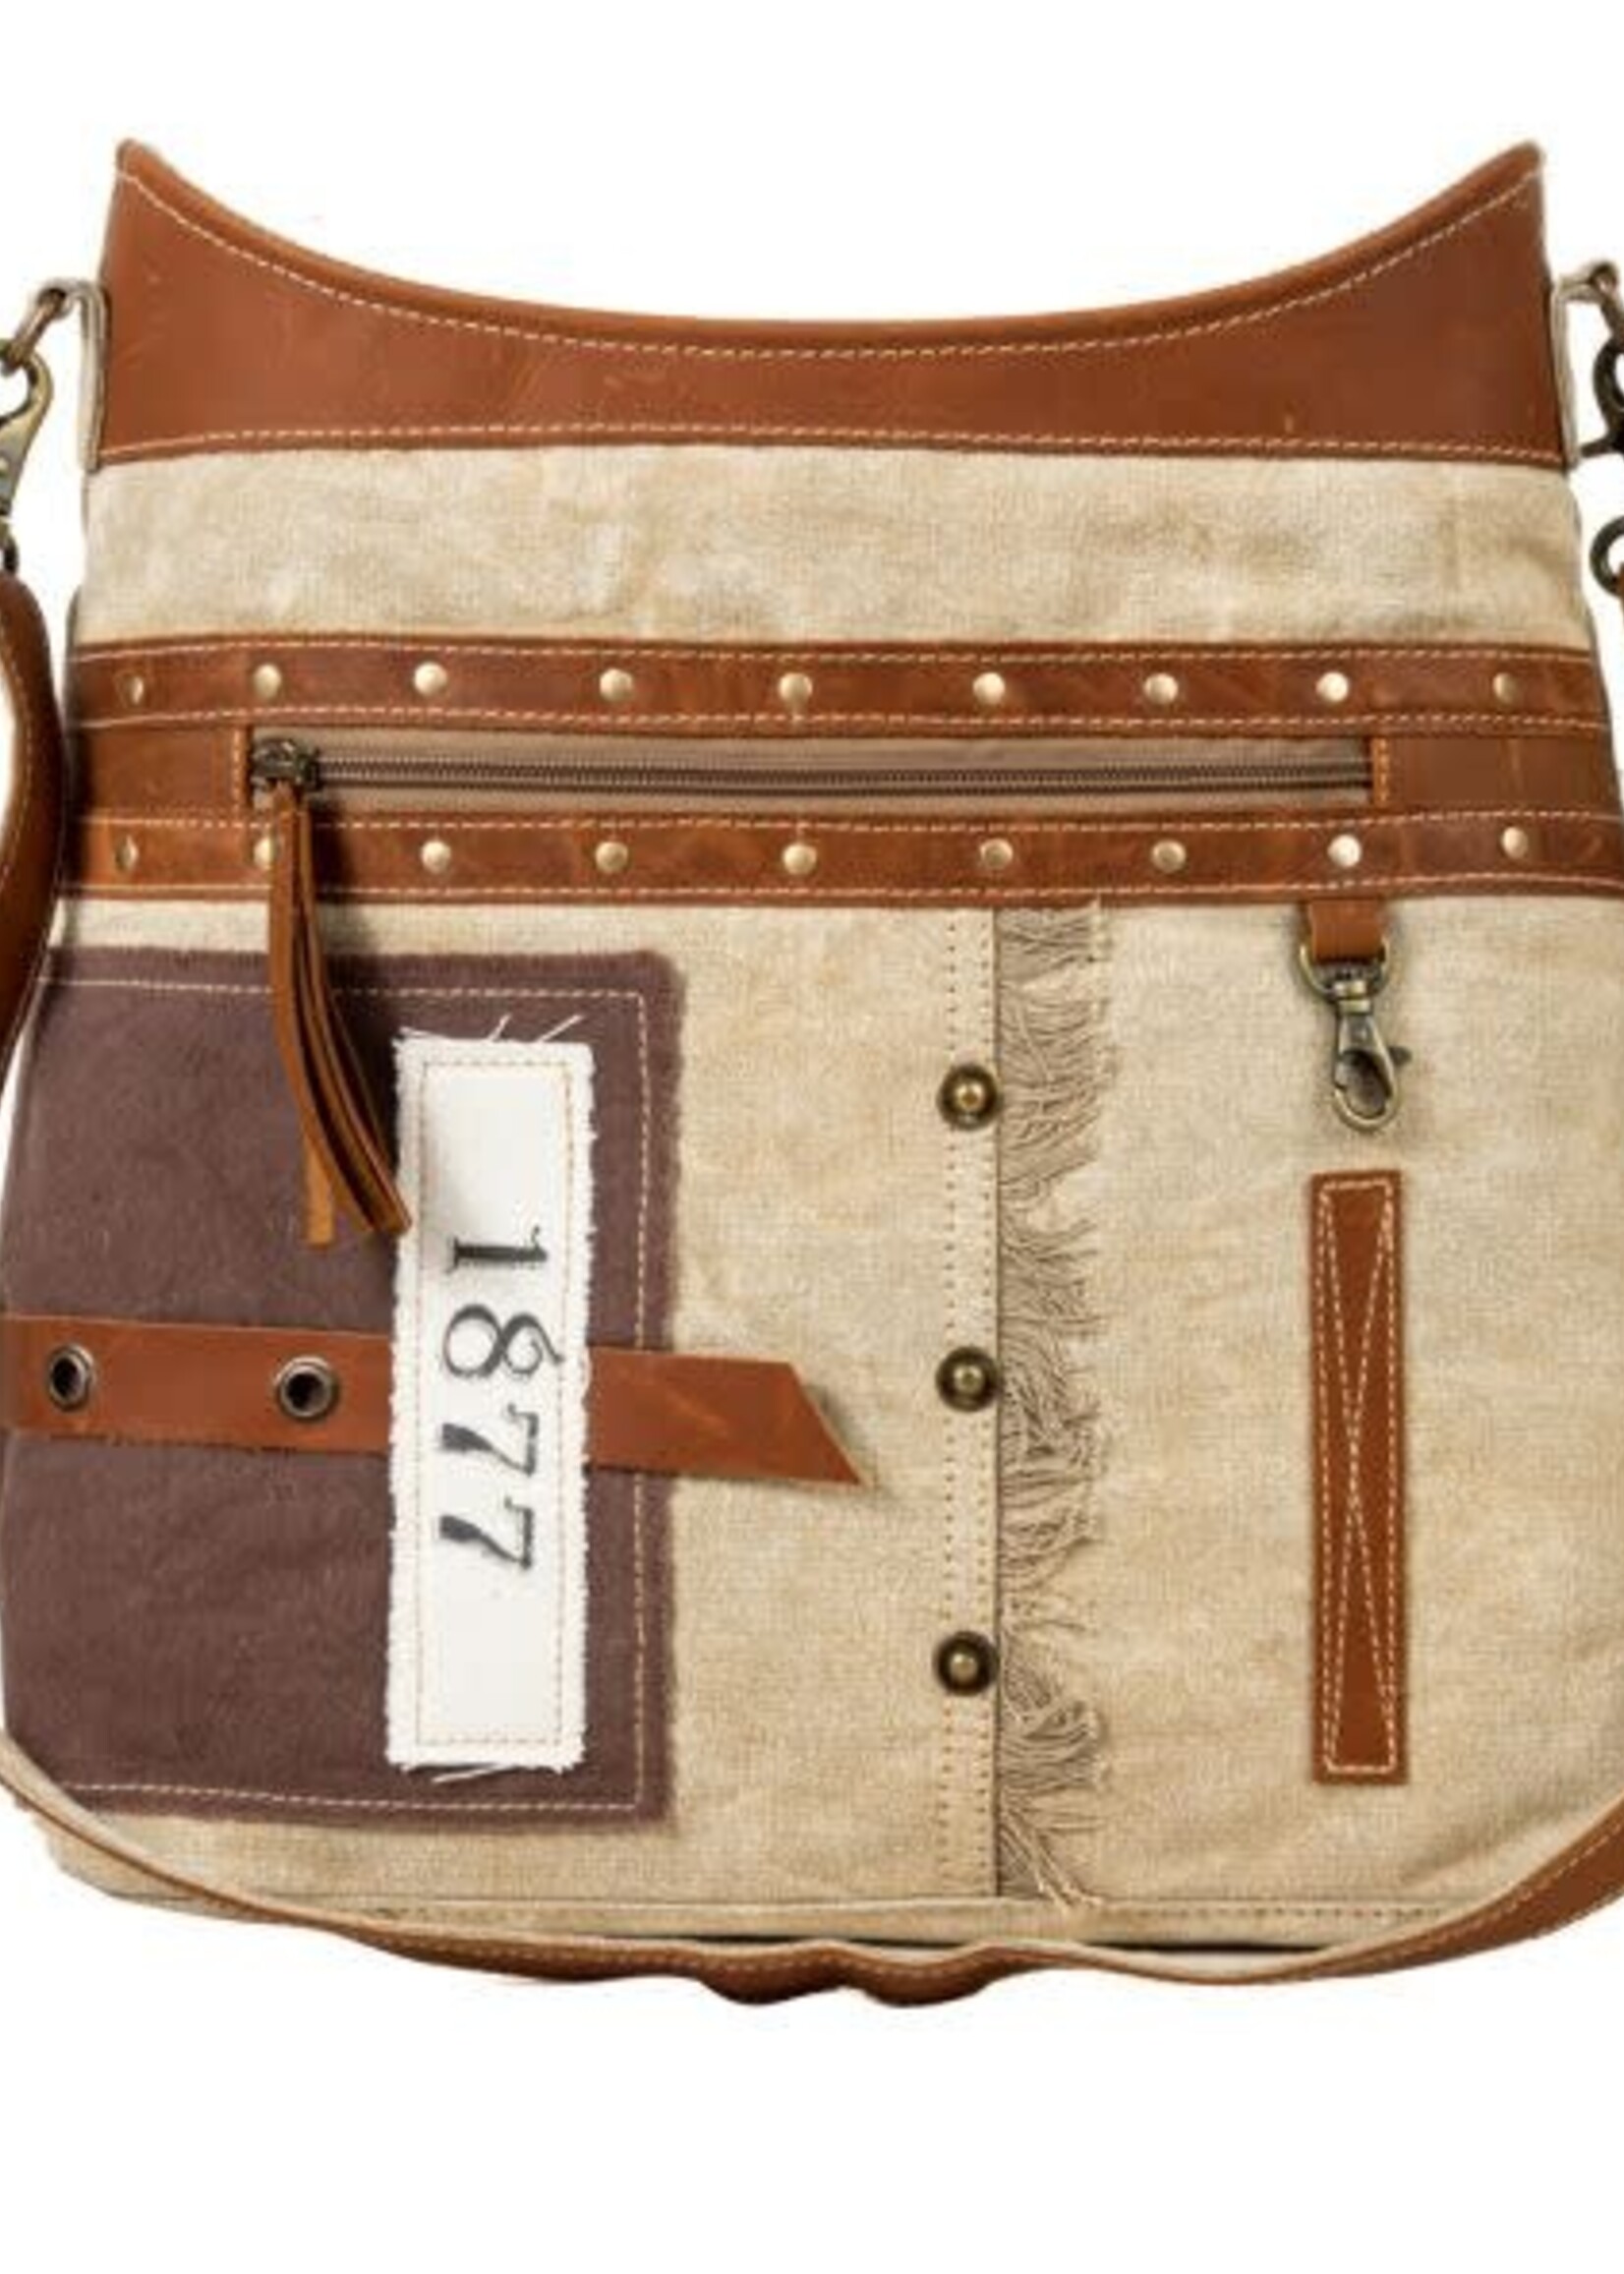 Myra Bag Yesteryear Vintage Style Shoulder Bag